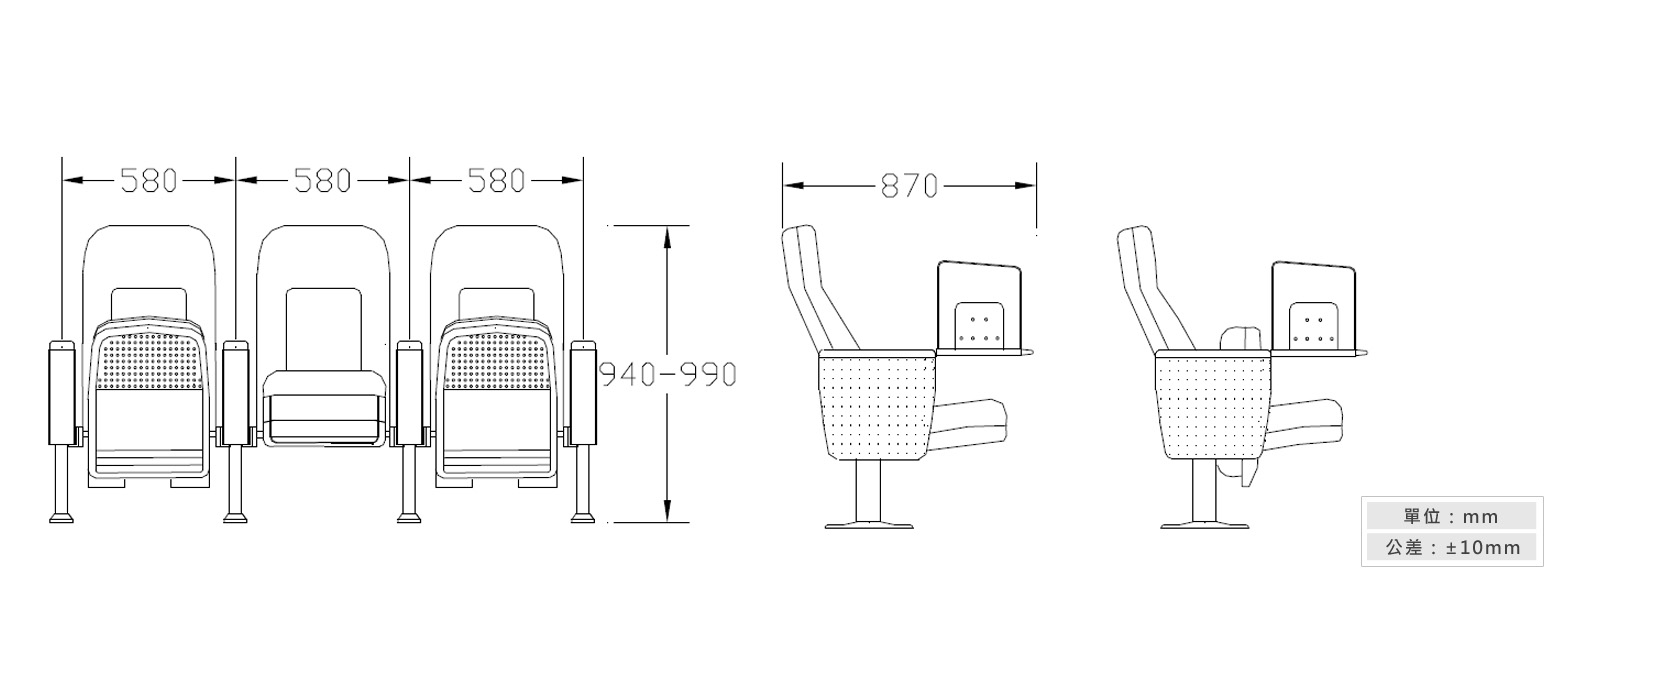 2-35 禮堂、視聽連結座椅(單人份)材質說明